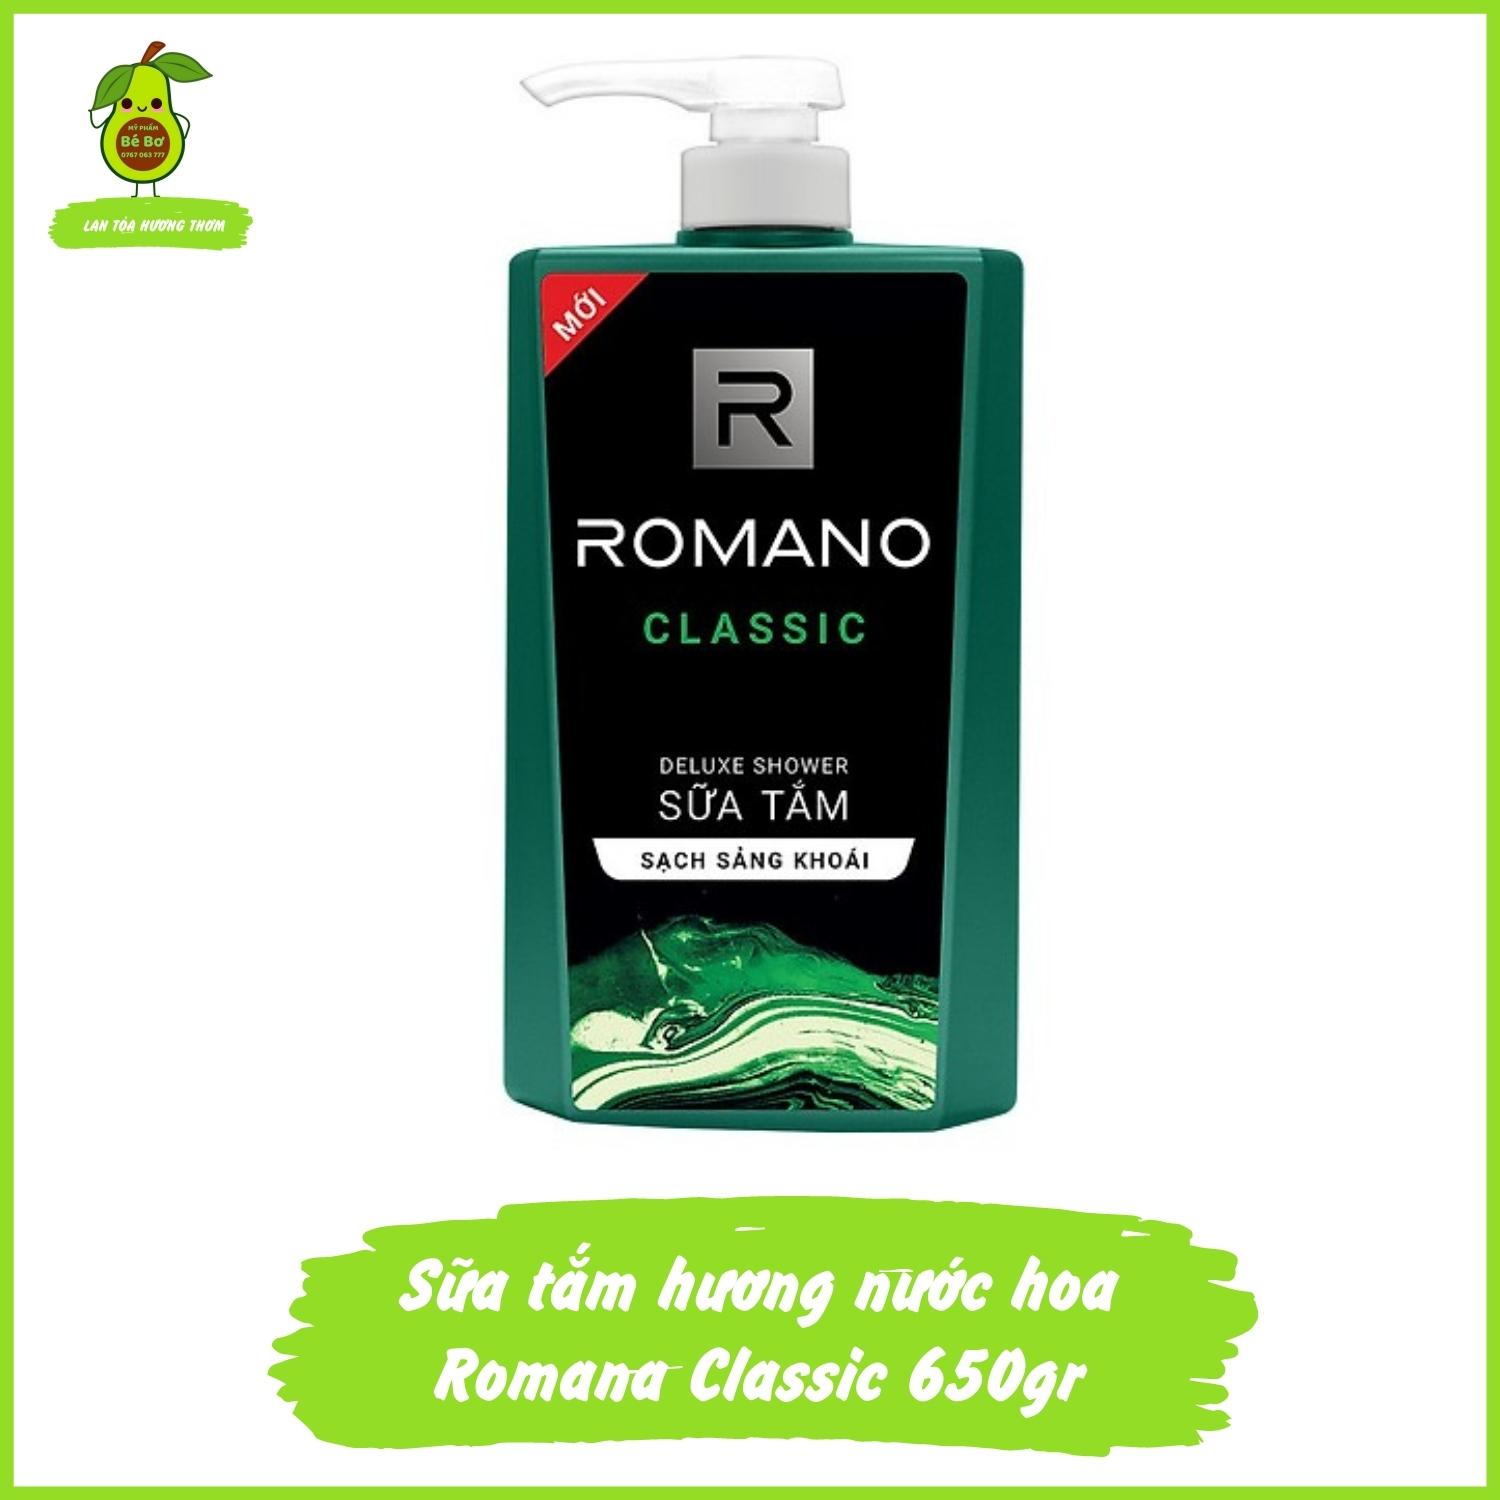 Sữa tắm Romano 650gr - Sữa tắm hương nước hoa nam sạch khuẩn ngăn mùi dưỡng da sảng khoái thumbnail